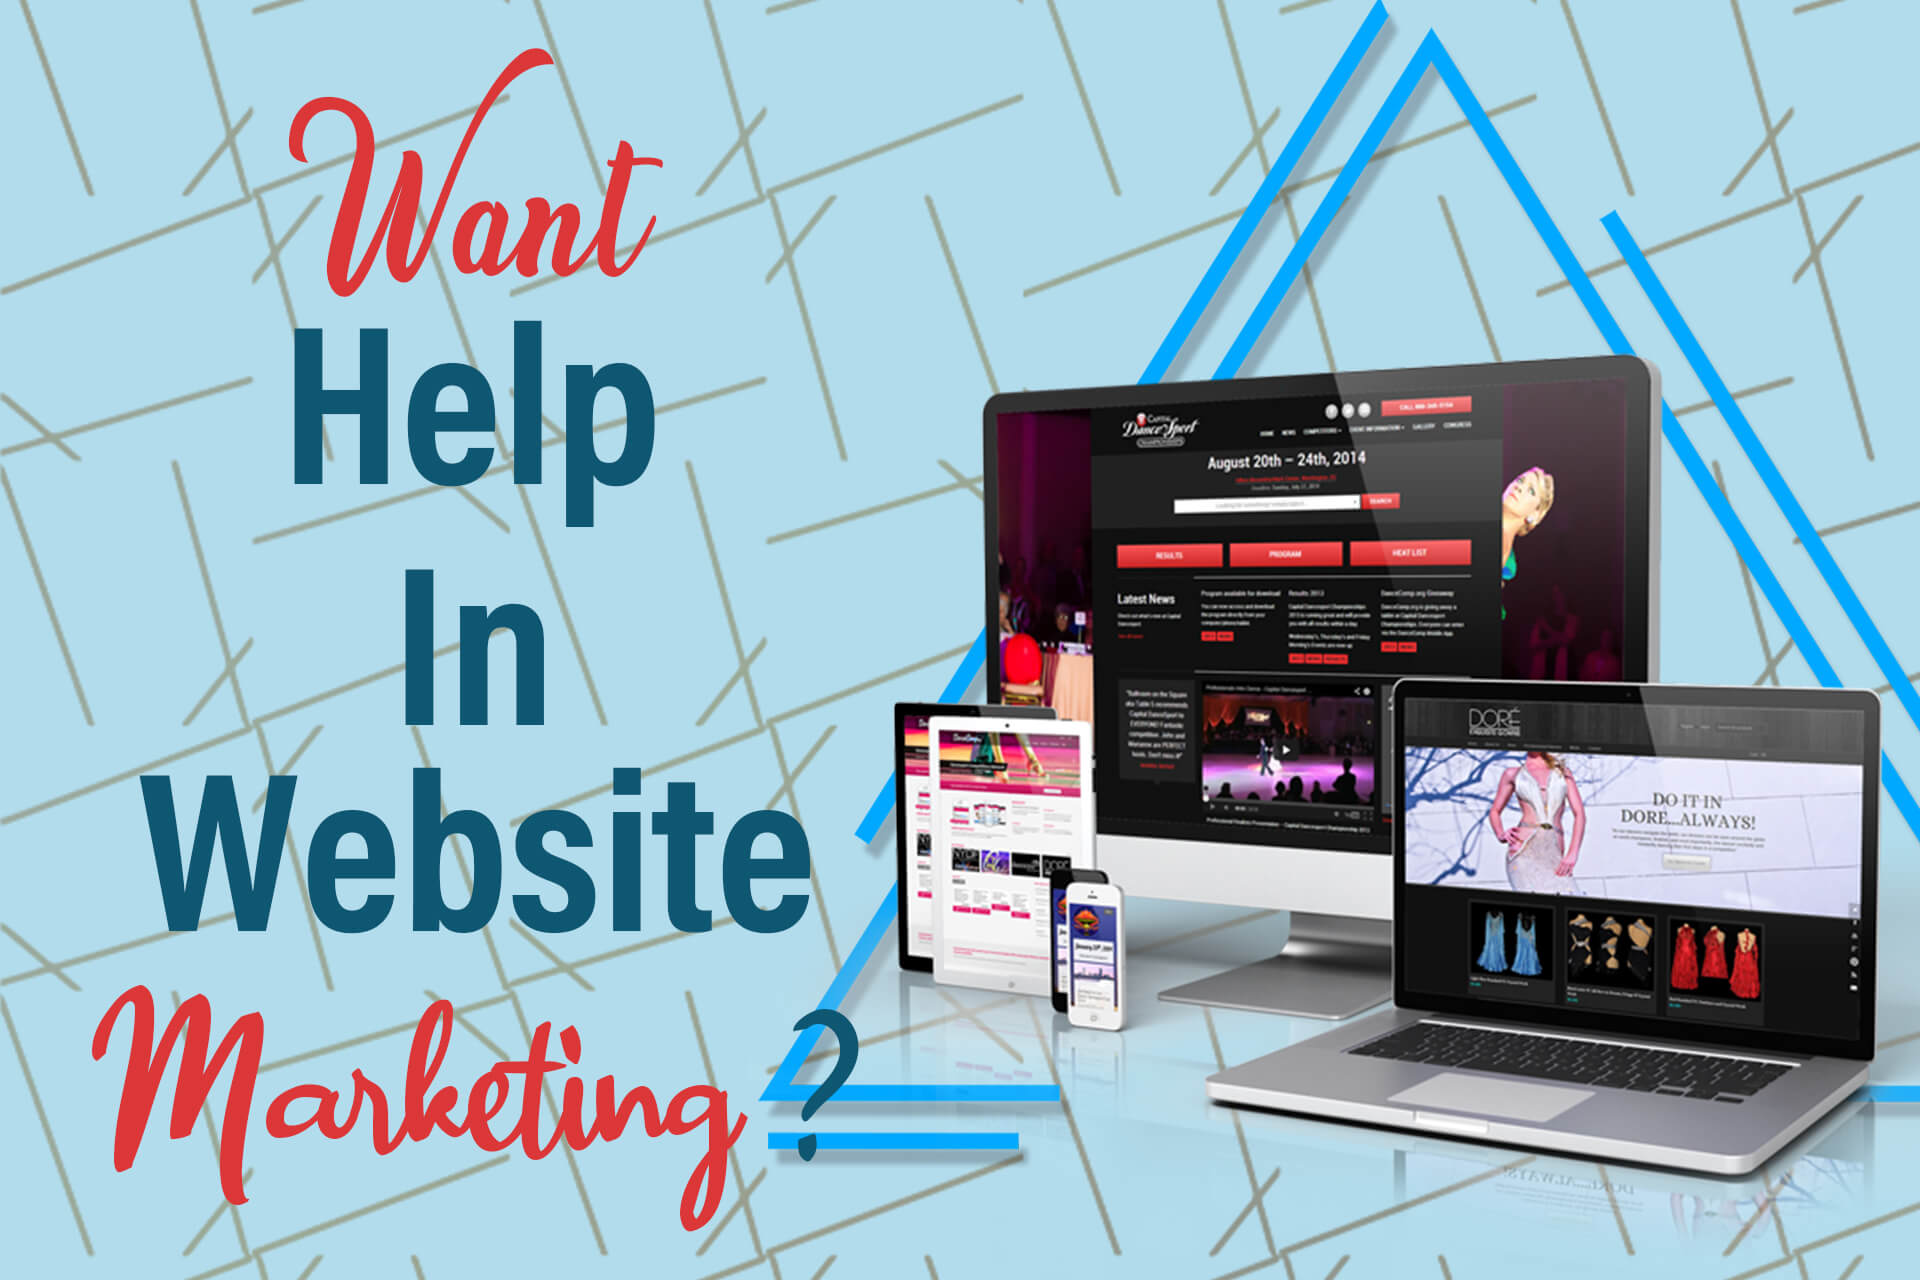 Want help in website marketing